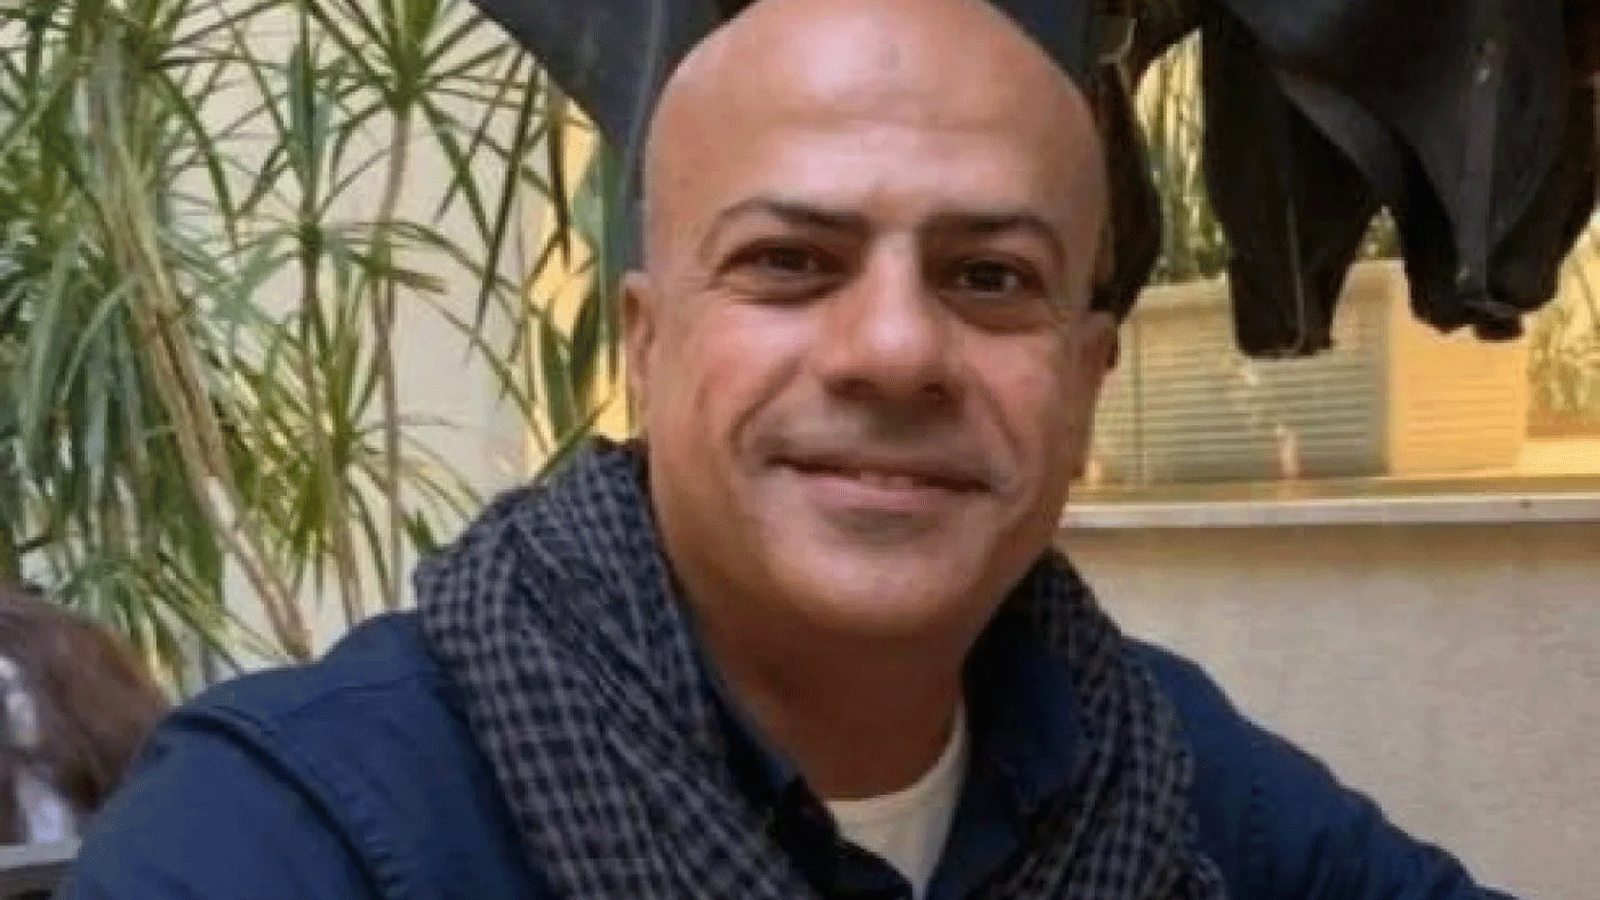 أيمن محمد علي هدهد كان قد اختفى في 5 فبراير / شباط، بحسب أسرته، التي أُبلغت بوفاته(تويتر)